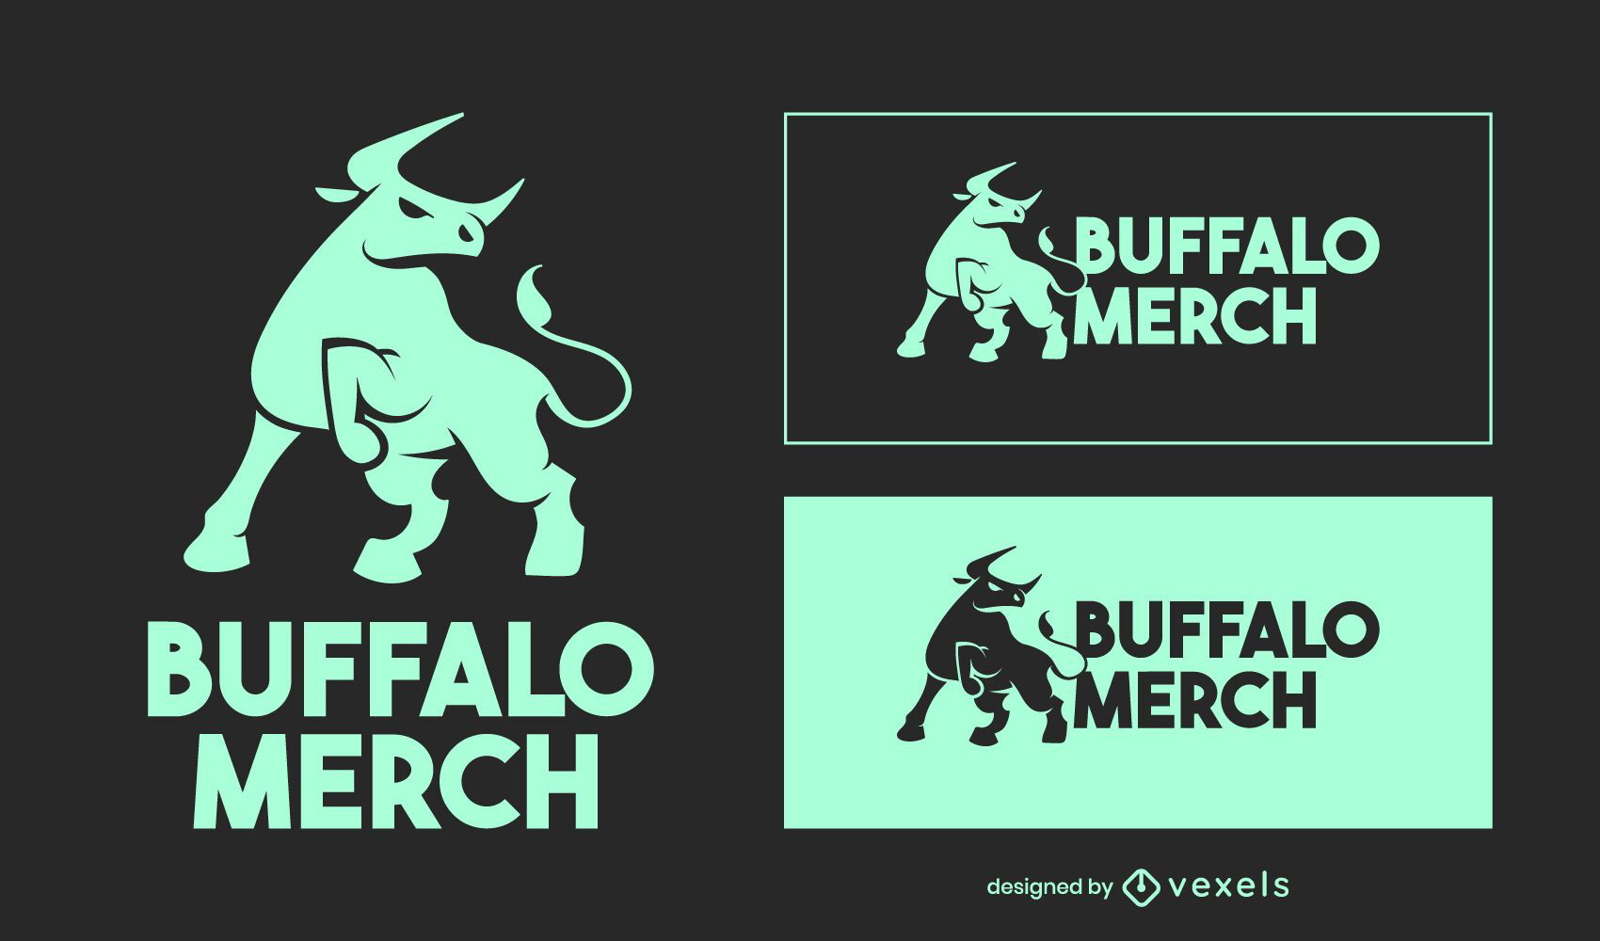 Buffalo merch logo design